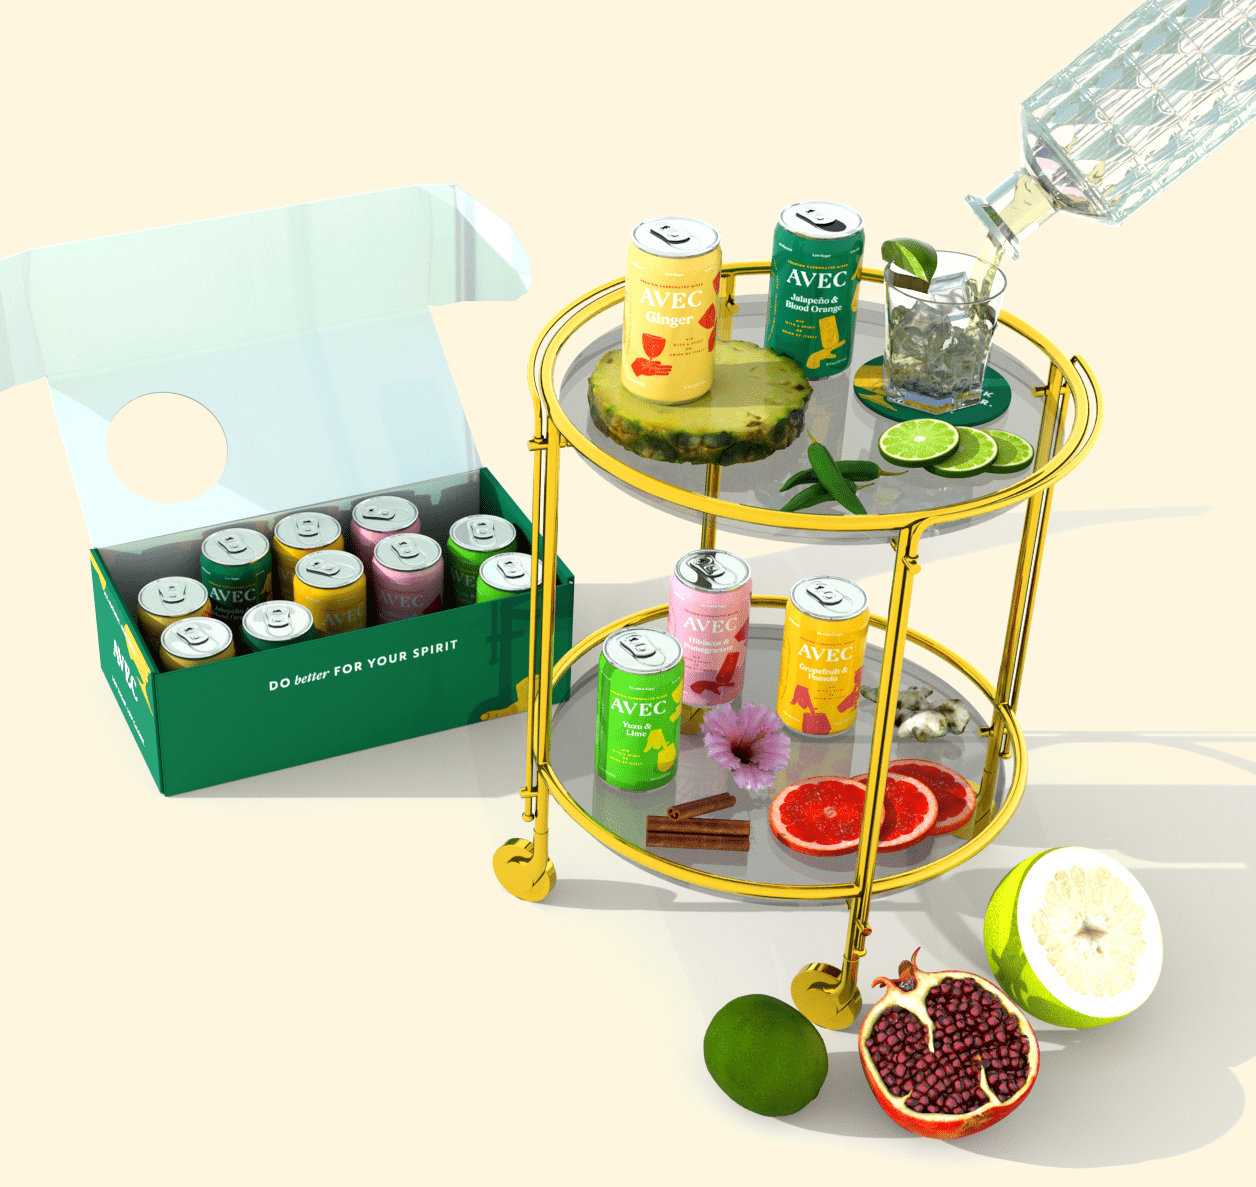 取样器在一个盒子里和一些丰富多彩的用罐与水果鸡尾酒酒吧车”class=